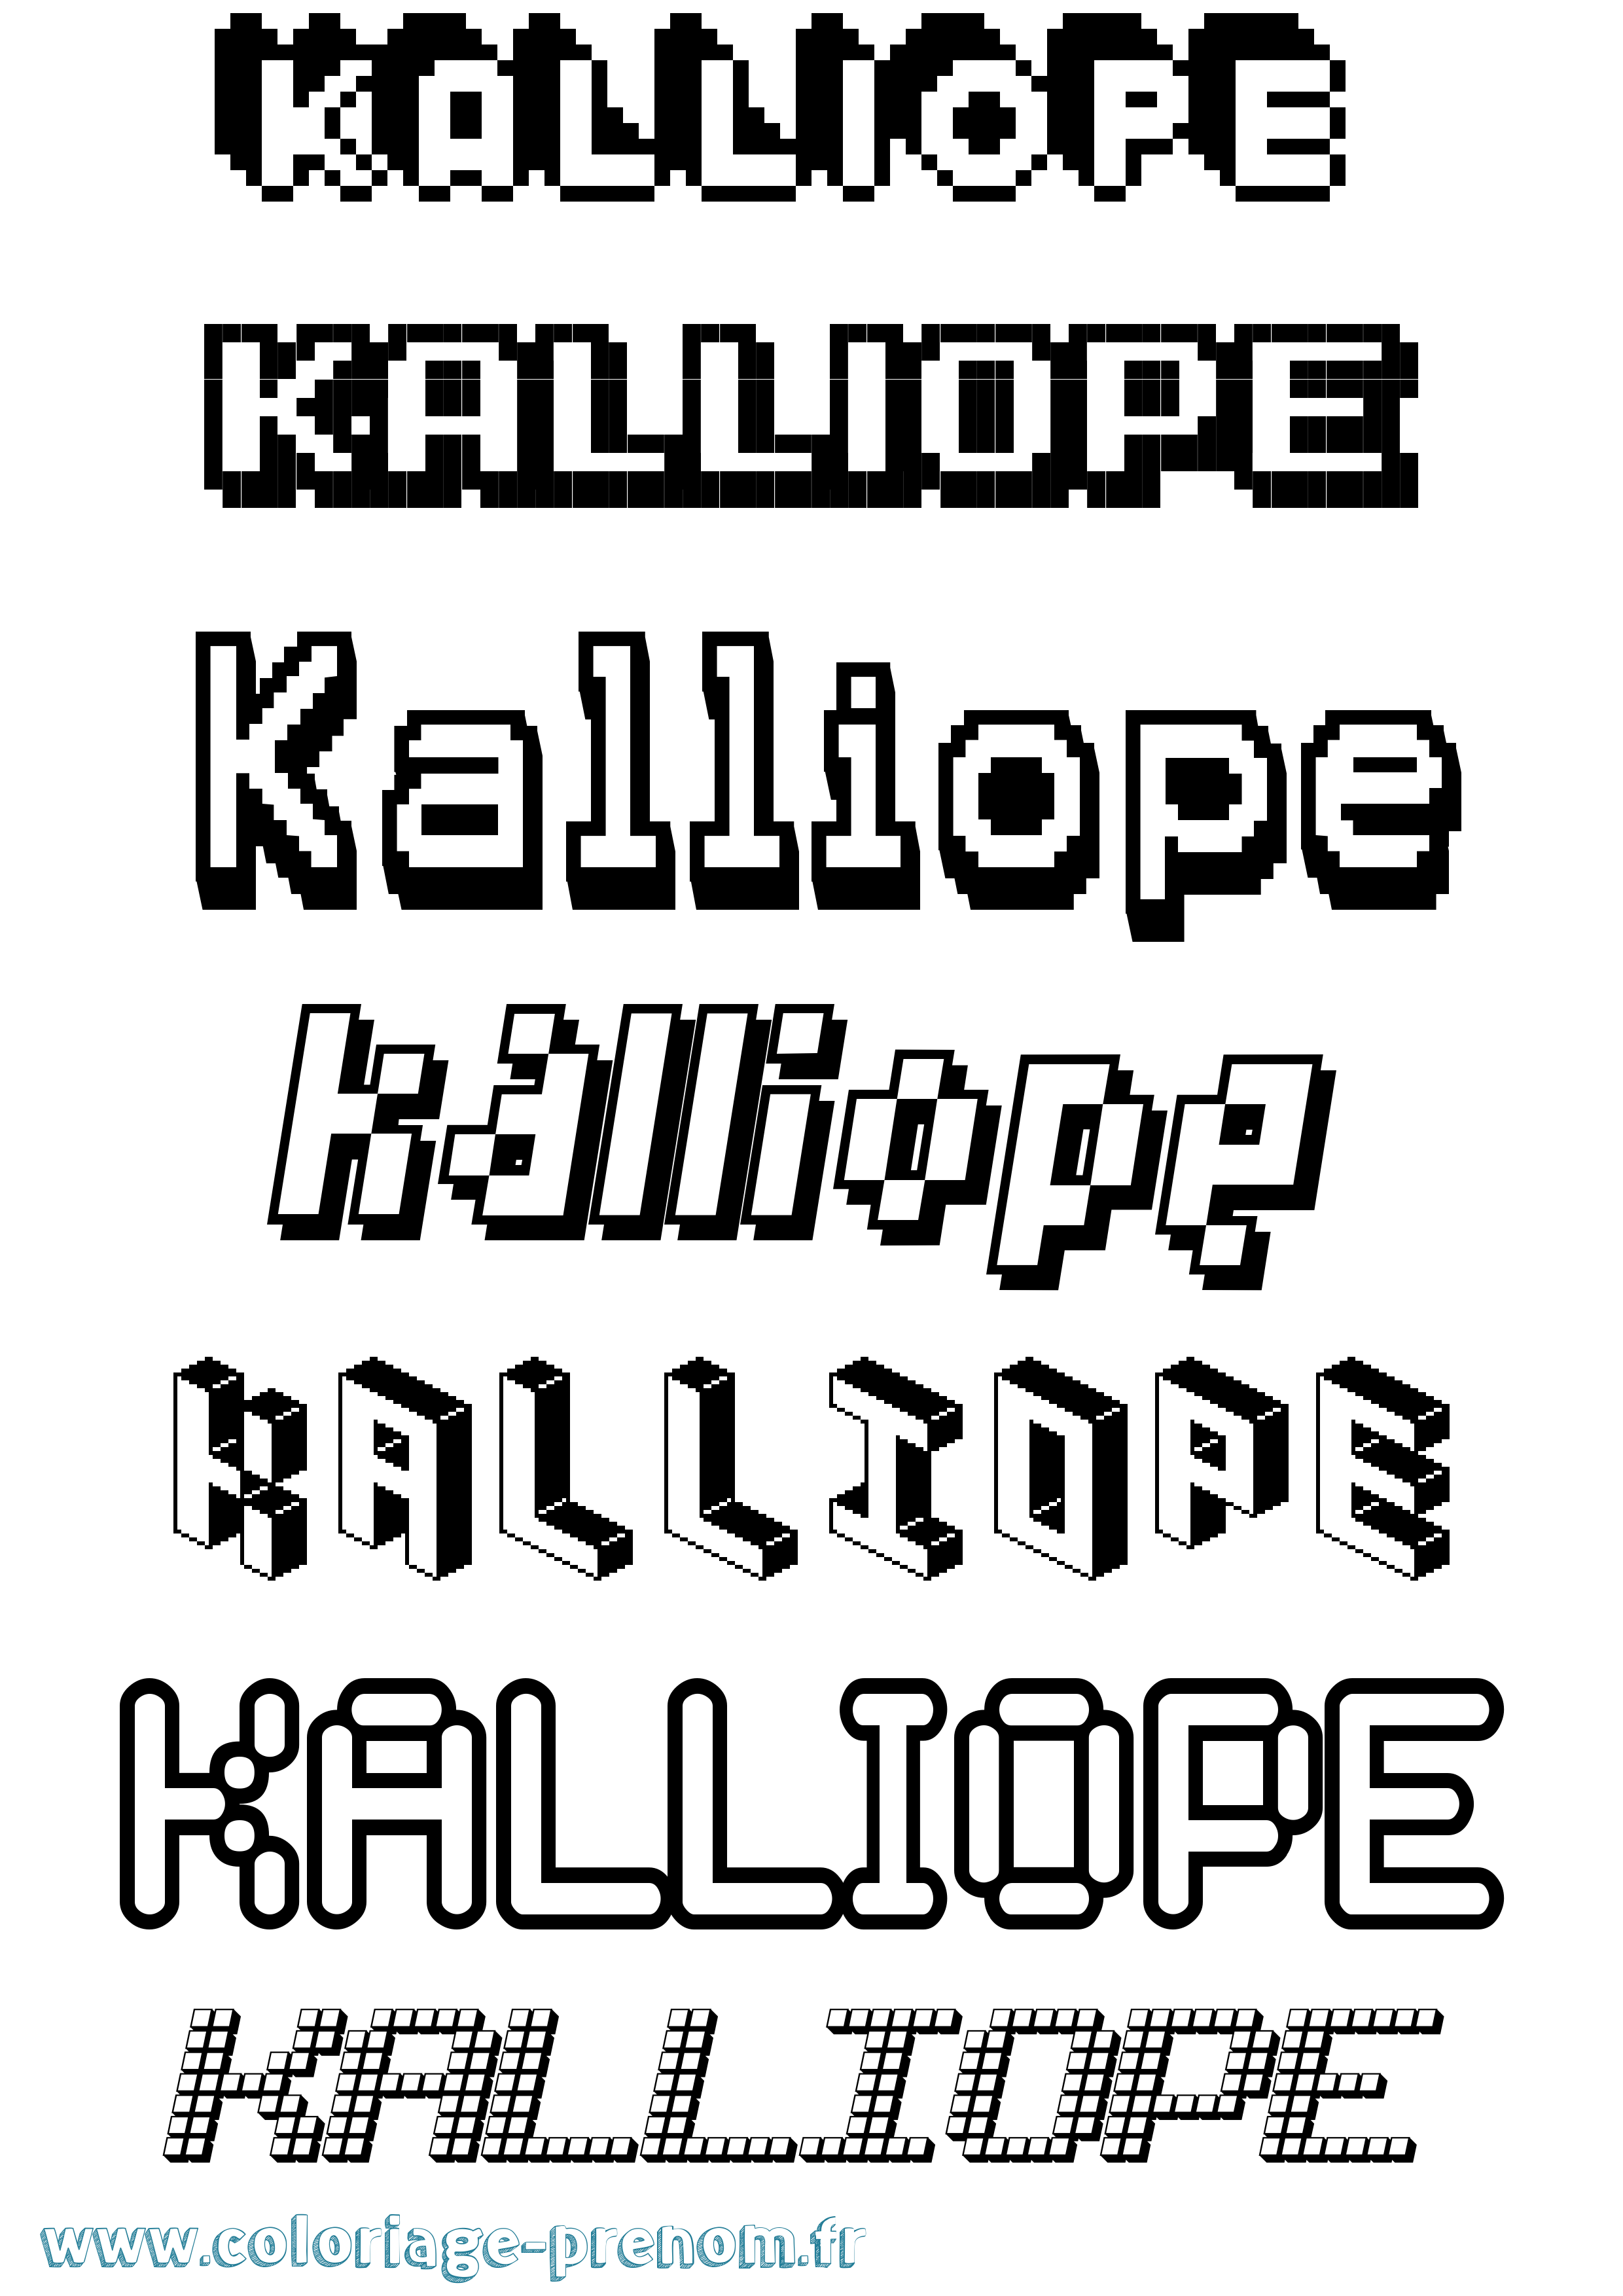 Coloriage prénom Kalliope Pixel